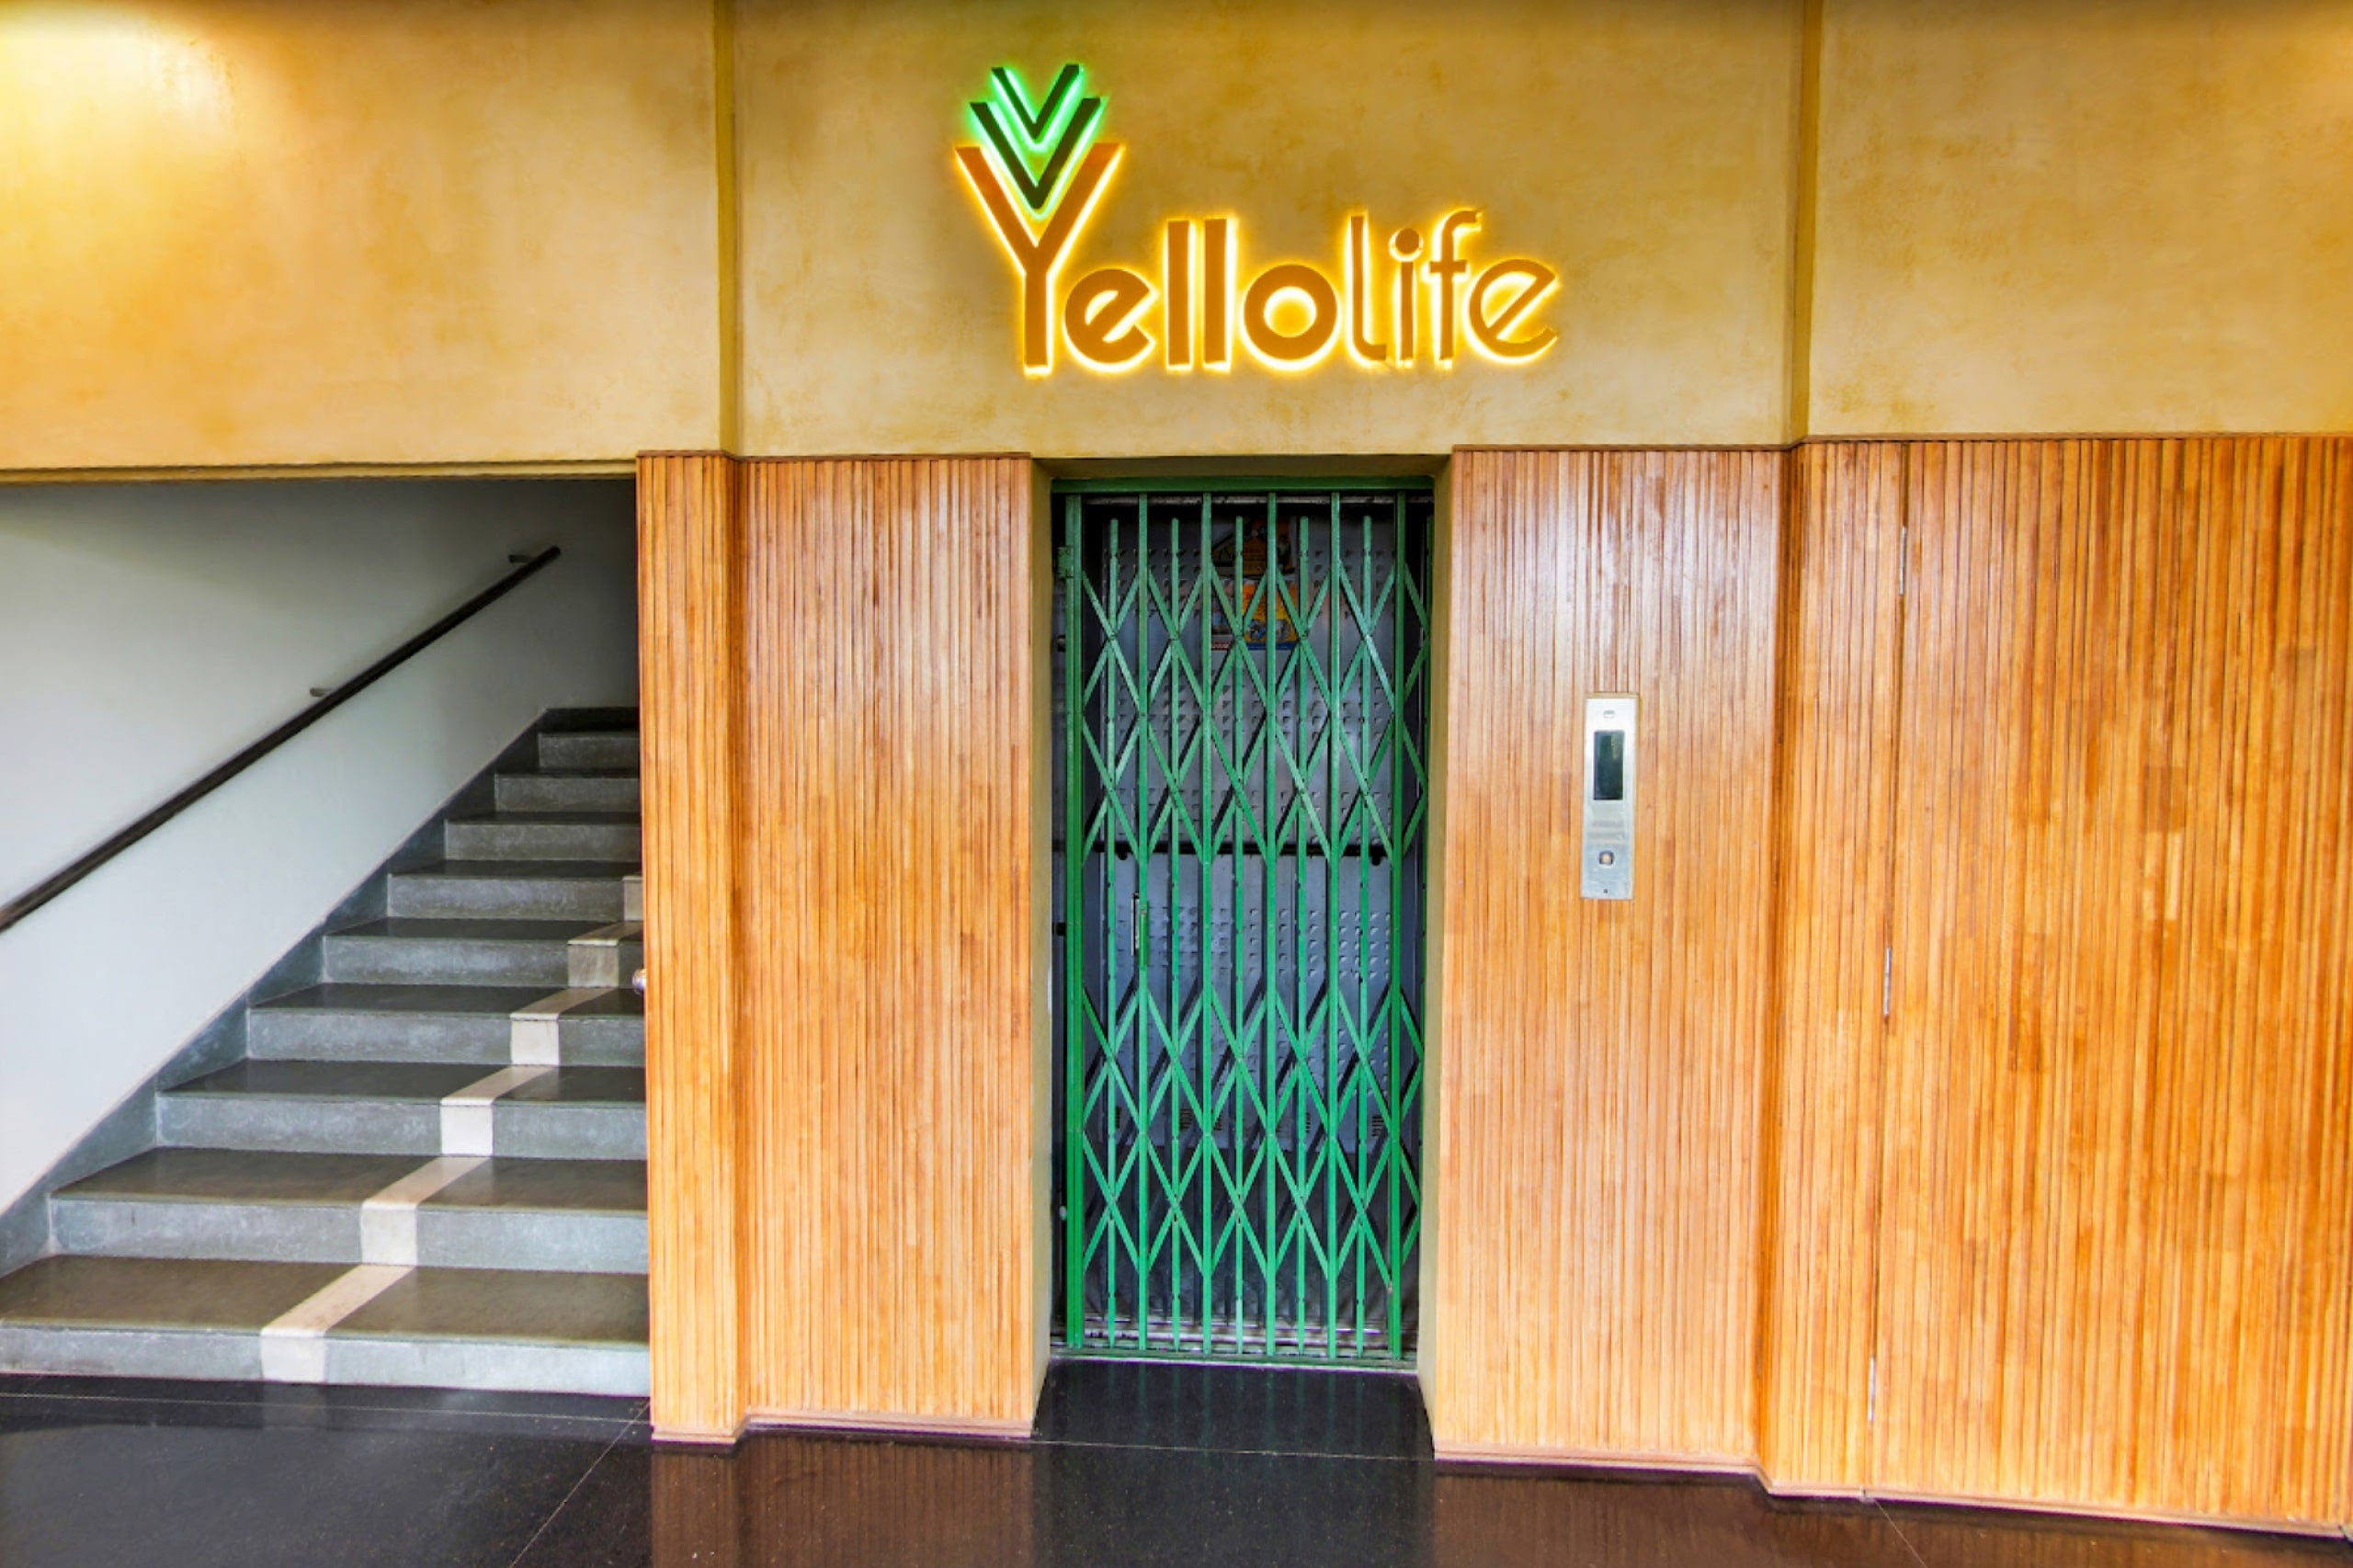 Yellolife Cafe